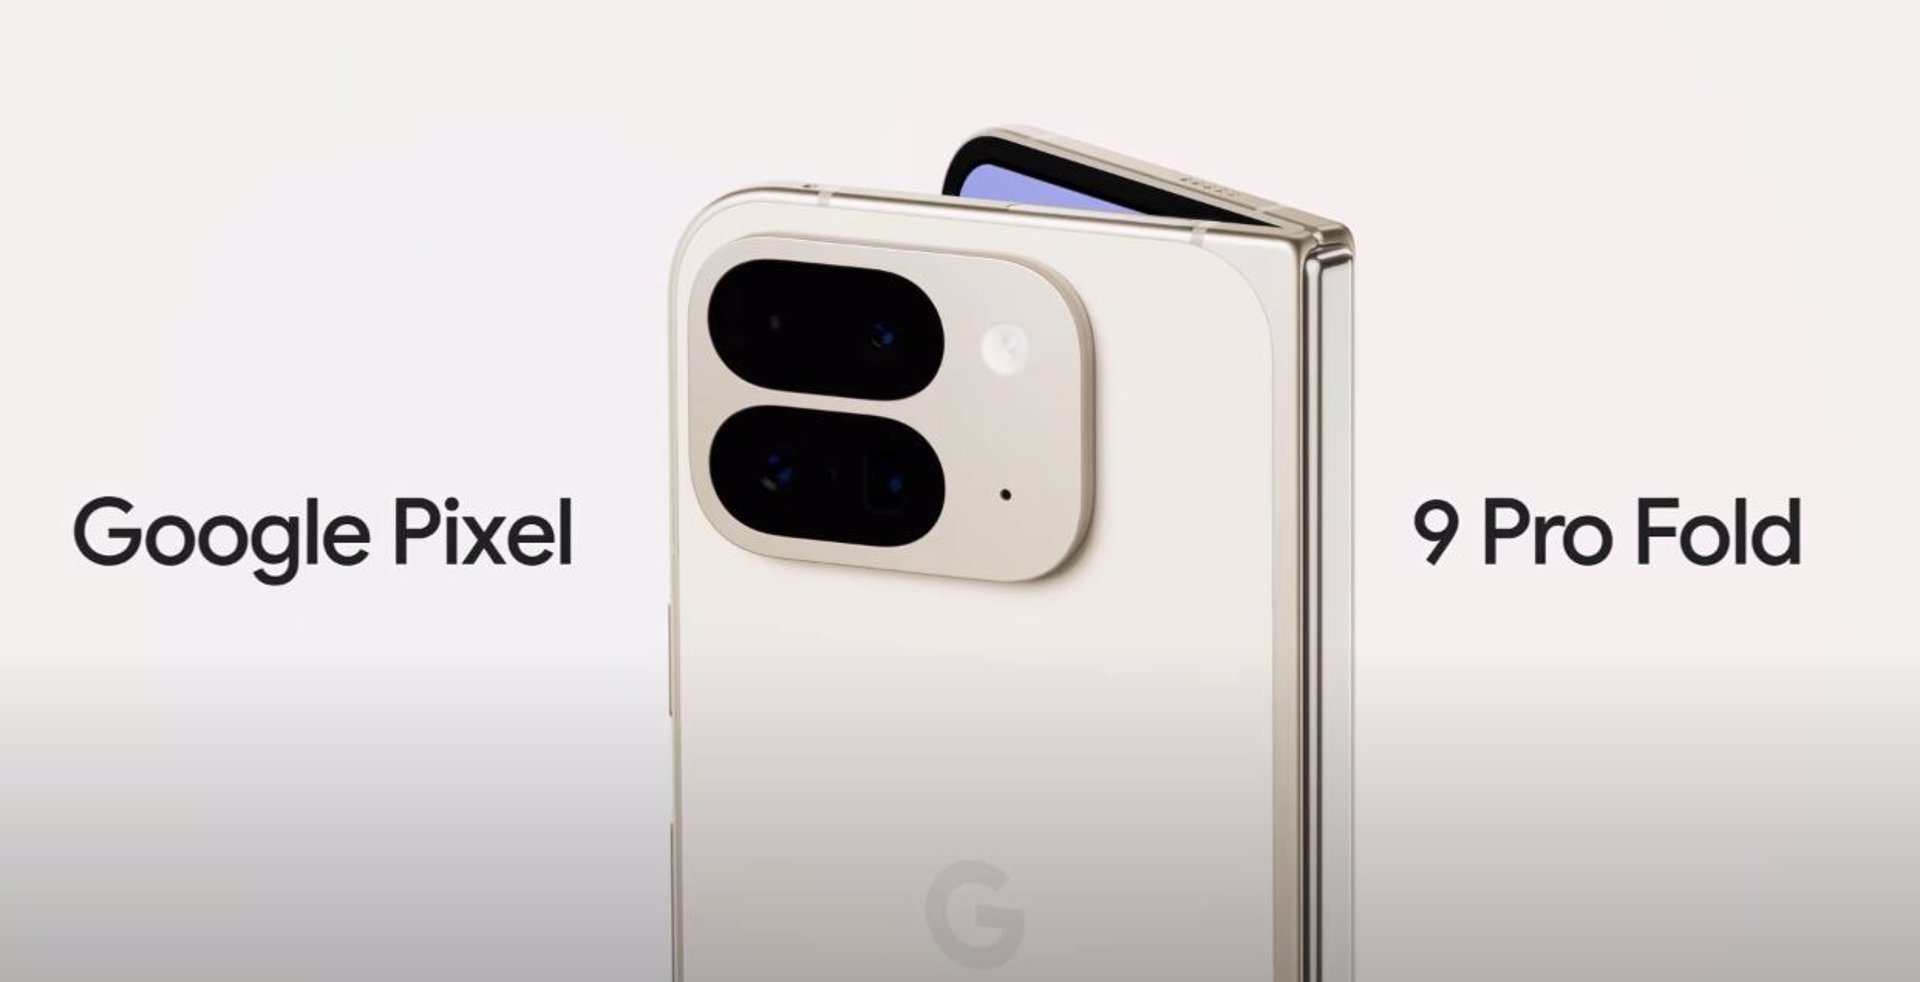 Google avanza que el nuevo plegable Pixel 9 Pro Fold incluirá dos módulos de cámara